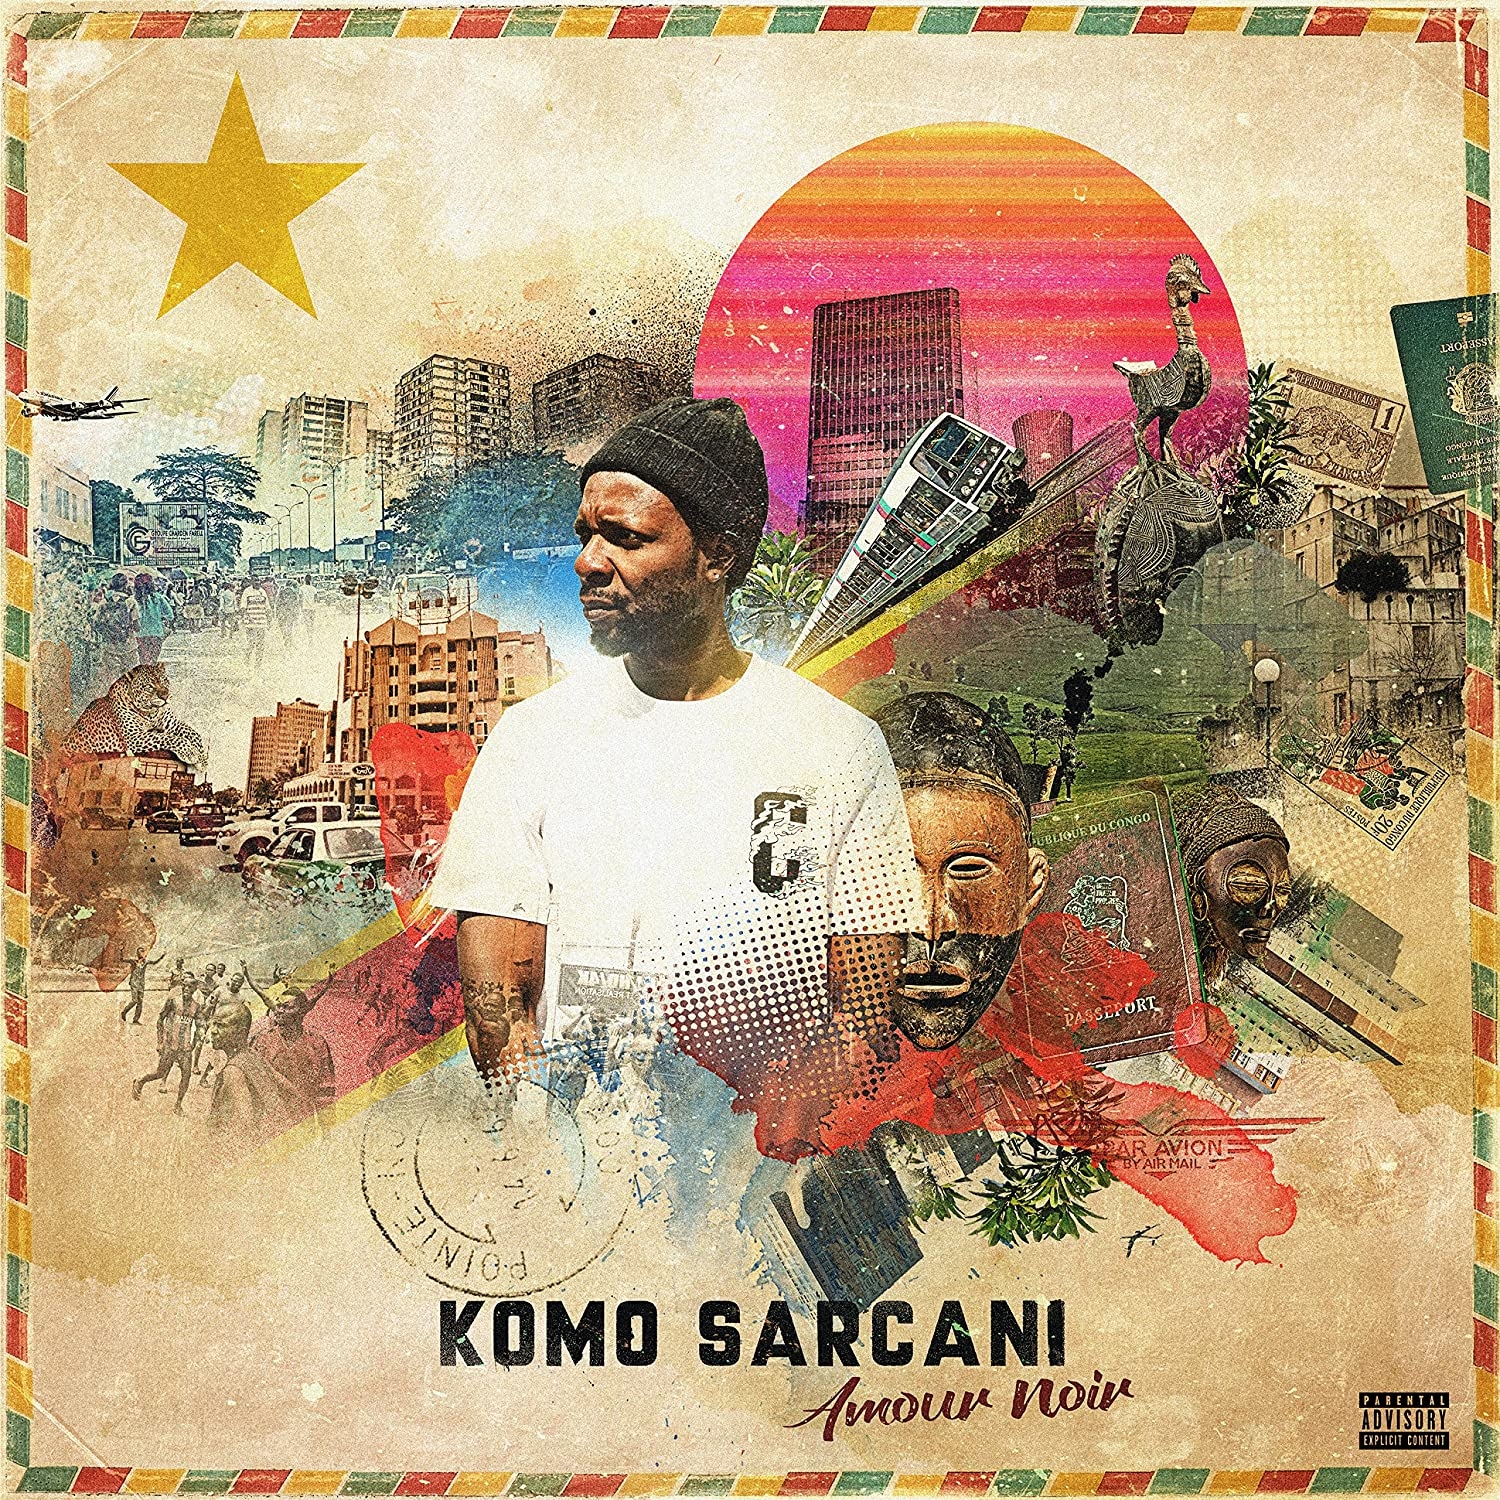 Album vinyle "komo sarcani" - Amour noir de sur Scredboutique.com